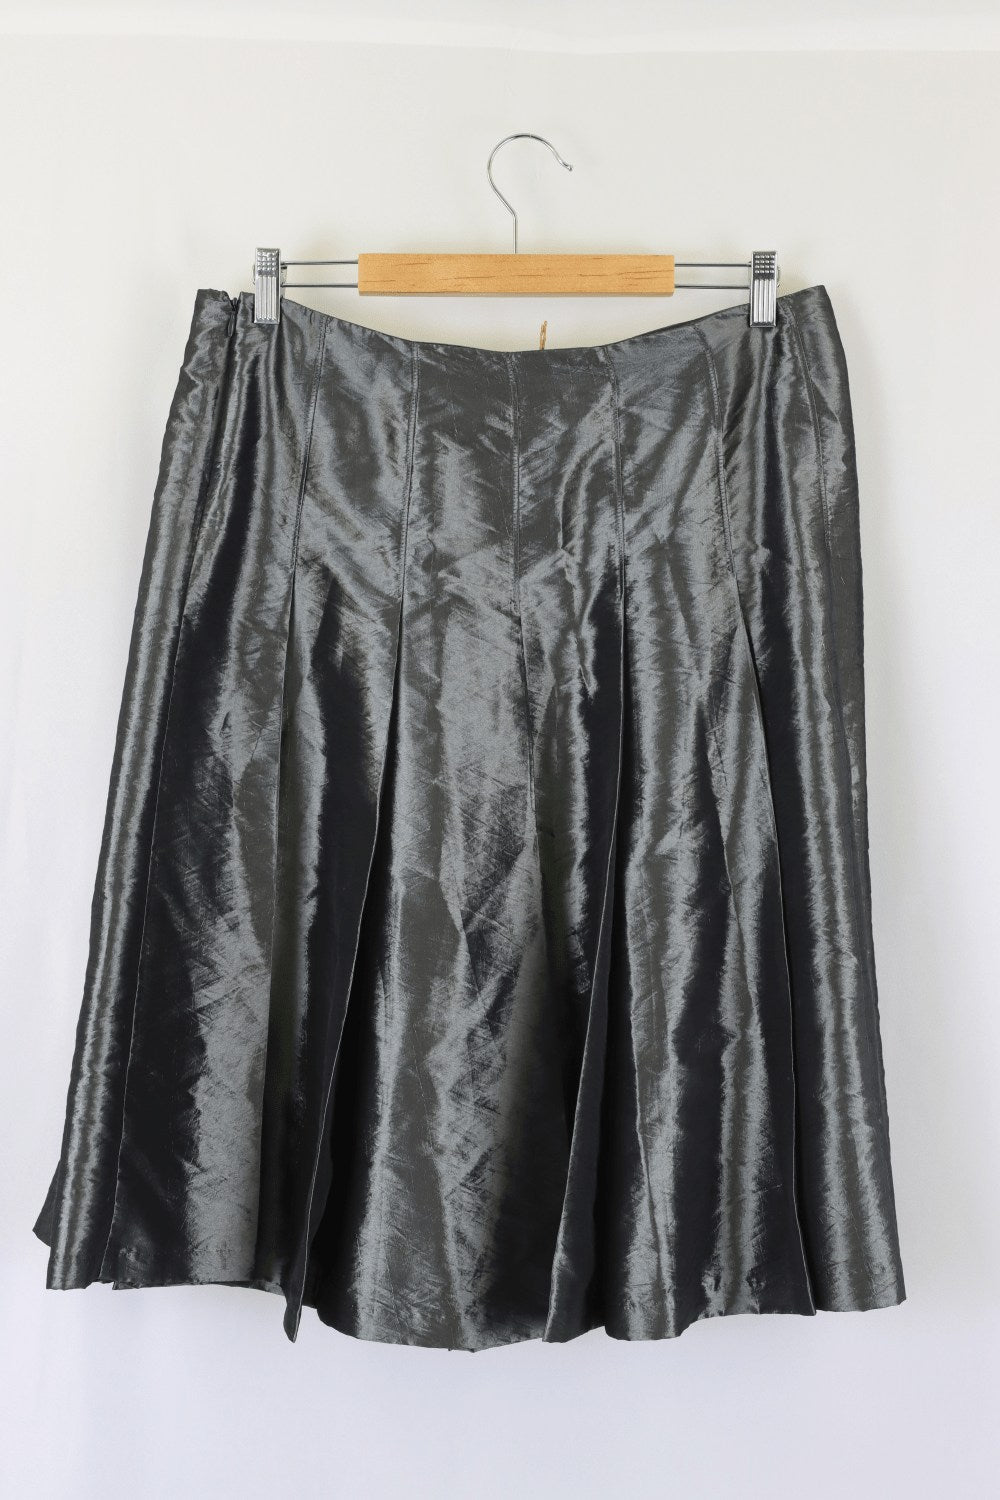 Jane Lamerton Silver Skirt 14